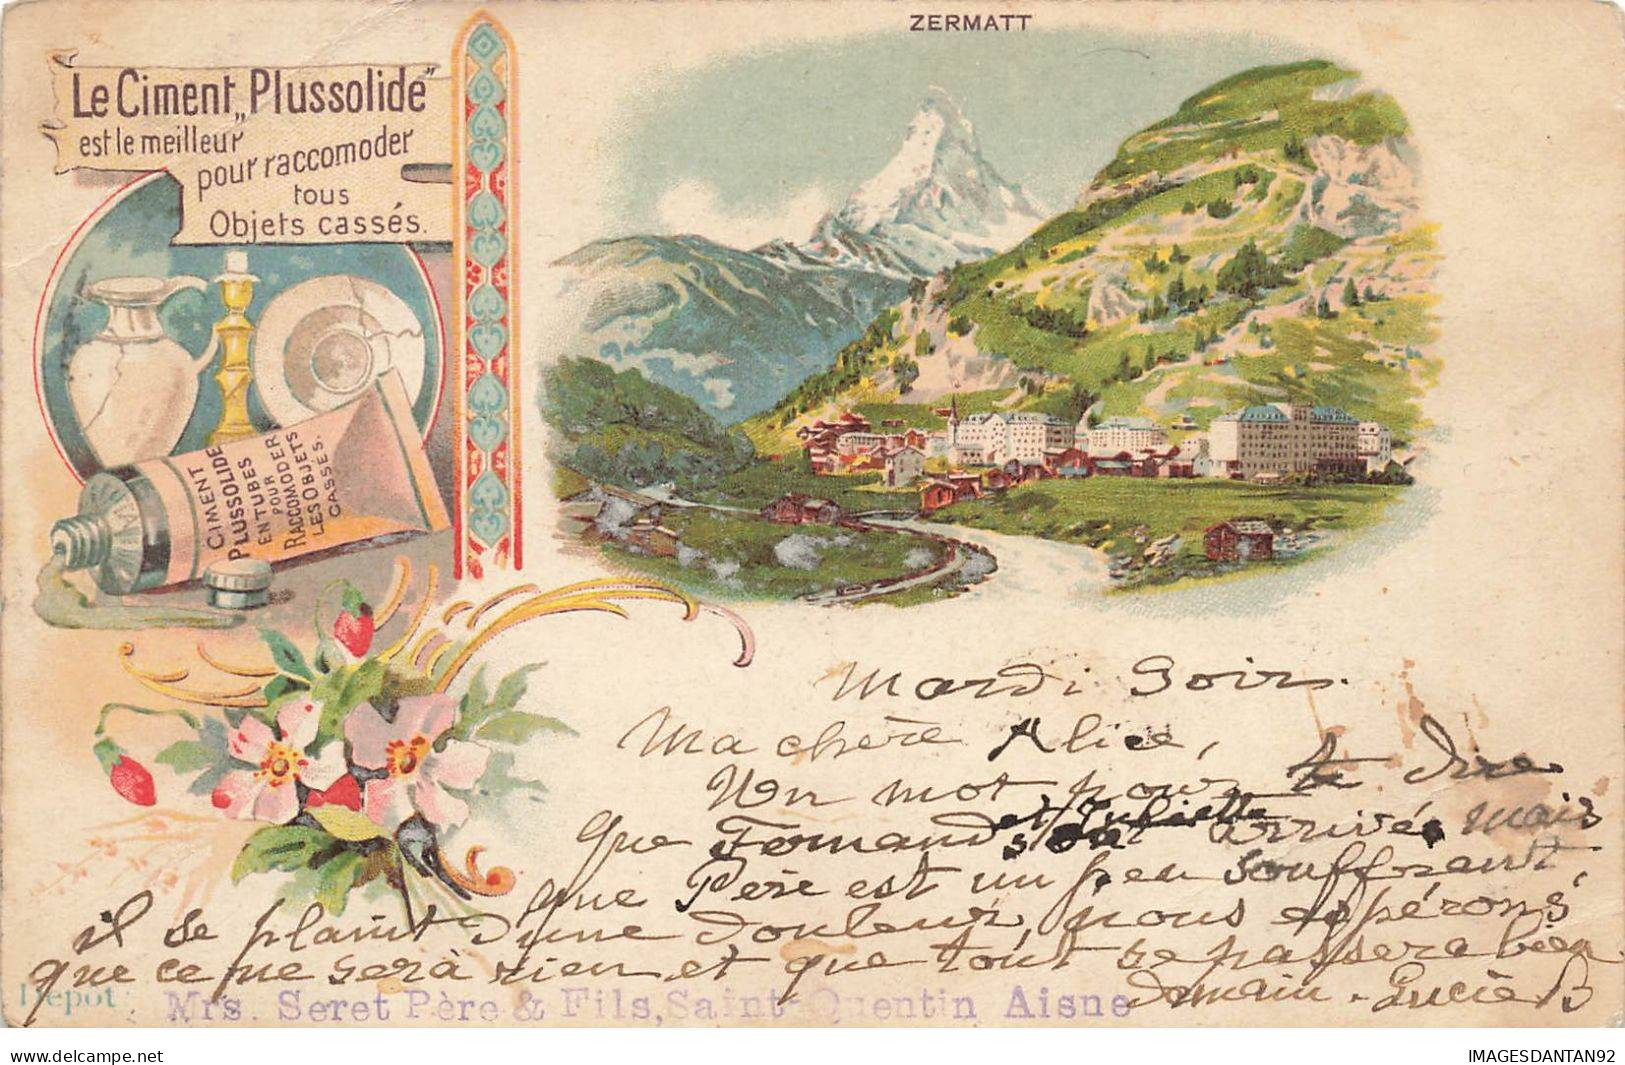 SUISSE #FG56334 ZERMATT + PUBLICITE CIMENT PLUSSOLIDE A SAINT QUENTIN AISNE TYPE GRUSS - Zermatt